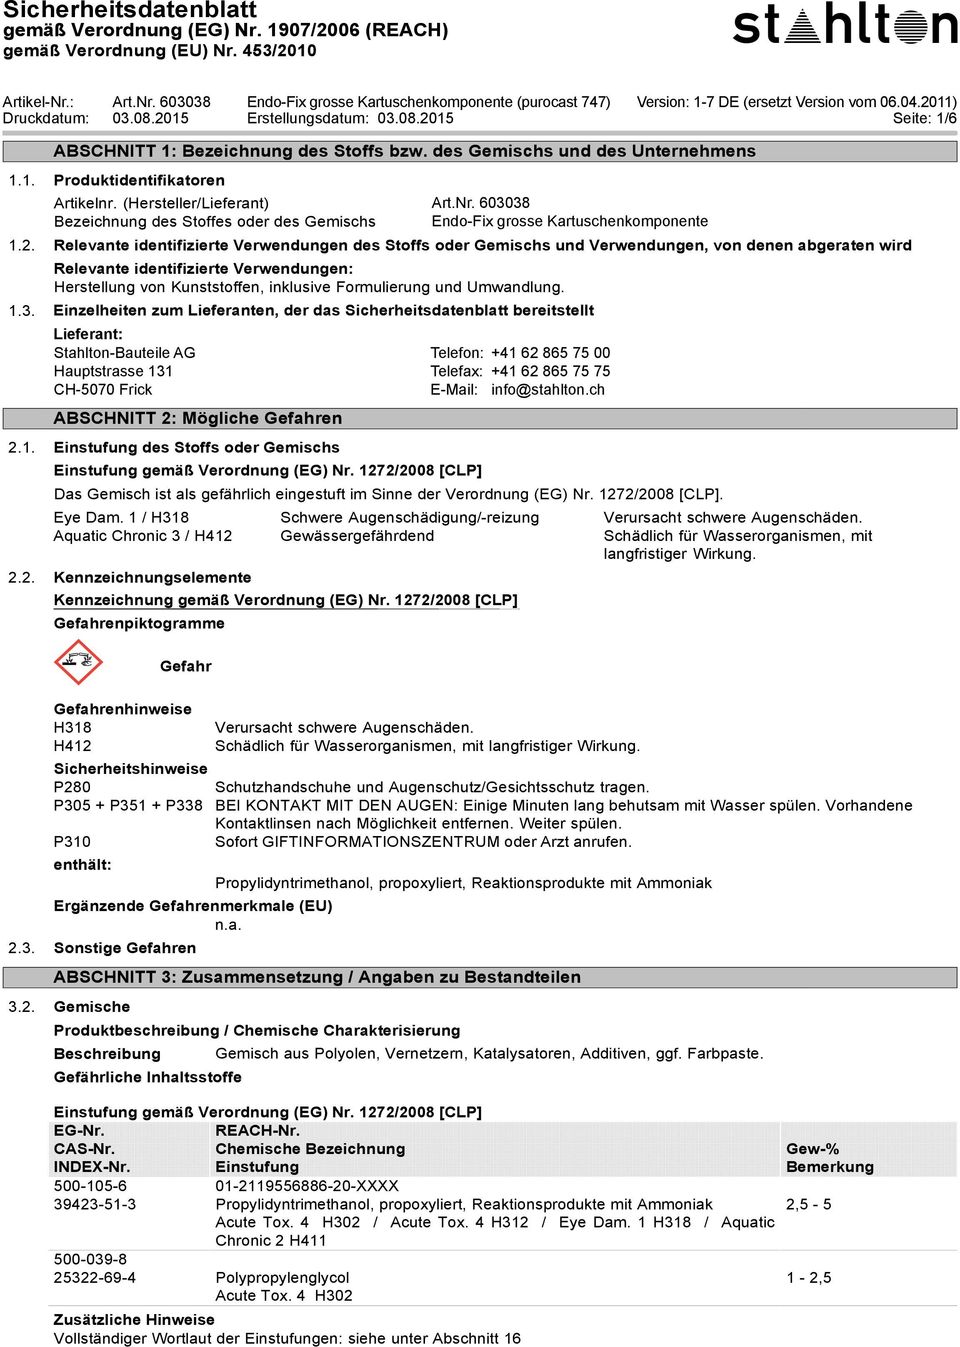 : Druckdatum: Art.Nr. 603038 Endo-Fix puronate Bearbeitungsdatum: grosse 900 Kartuschenkomponente (purocast 747) Version: (ersetzt Version vom 06.04.